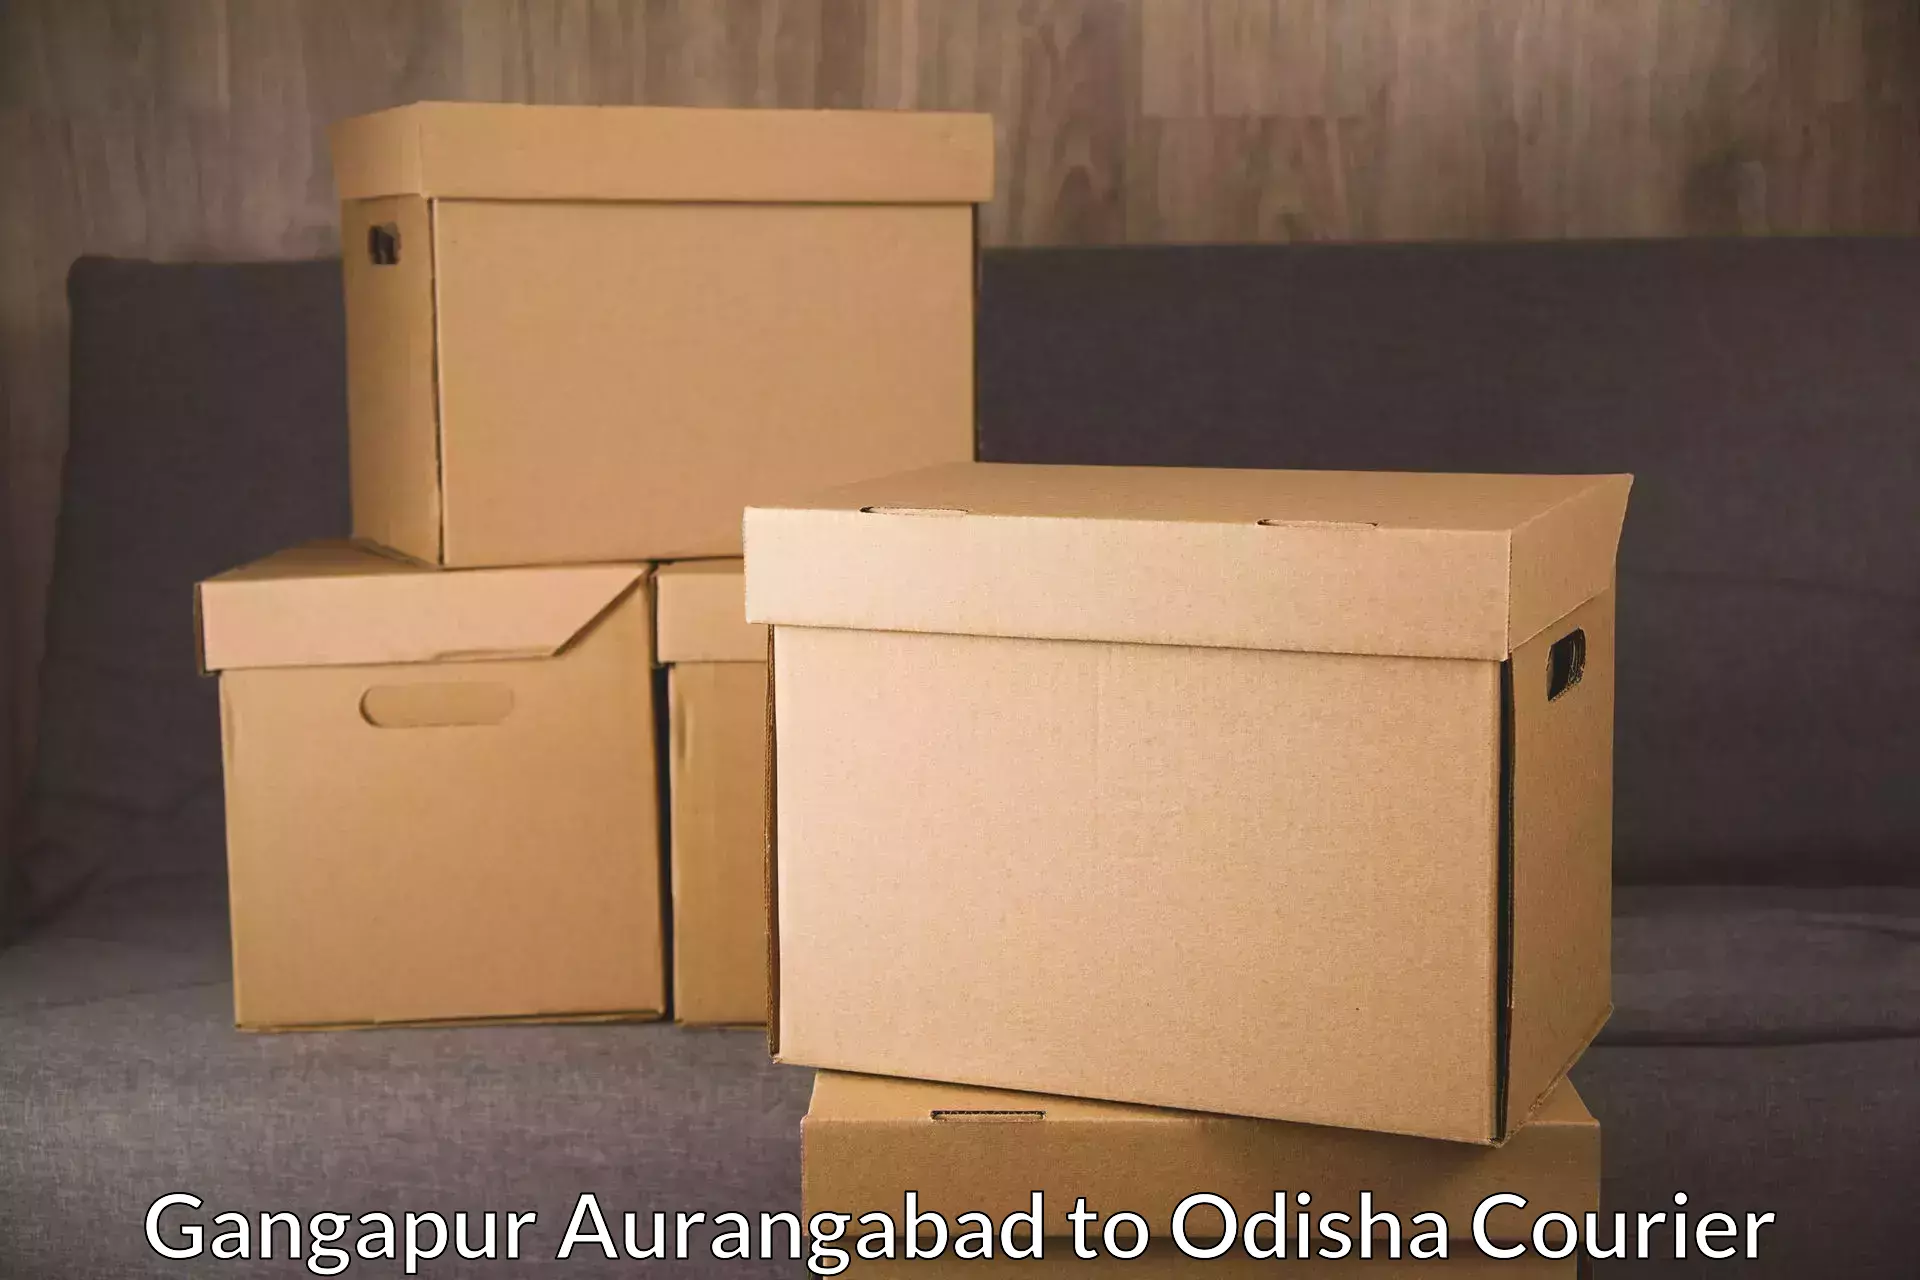 Automated parcel services Gangapur Aurangabad to NIT Rourkela